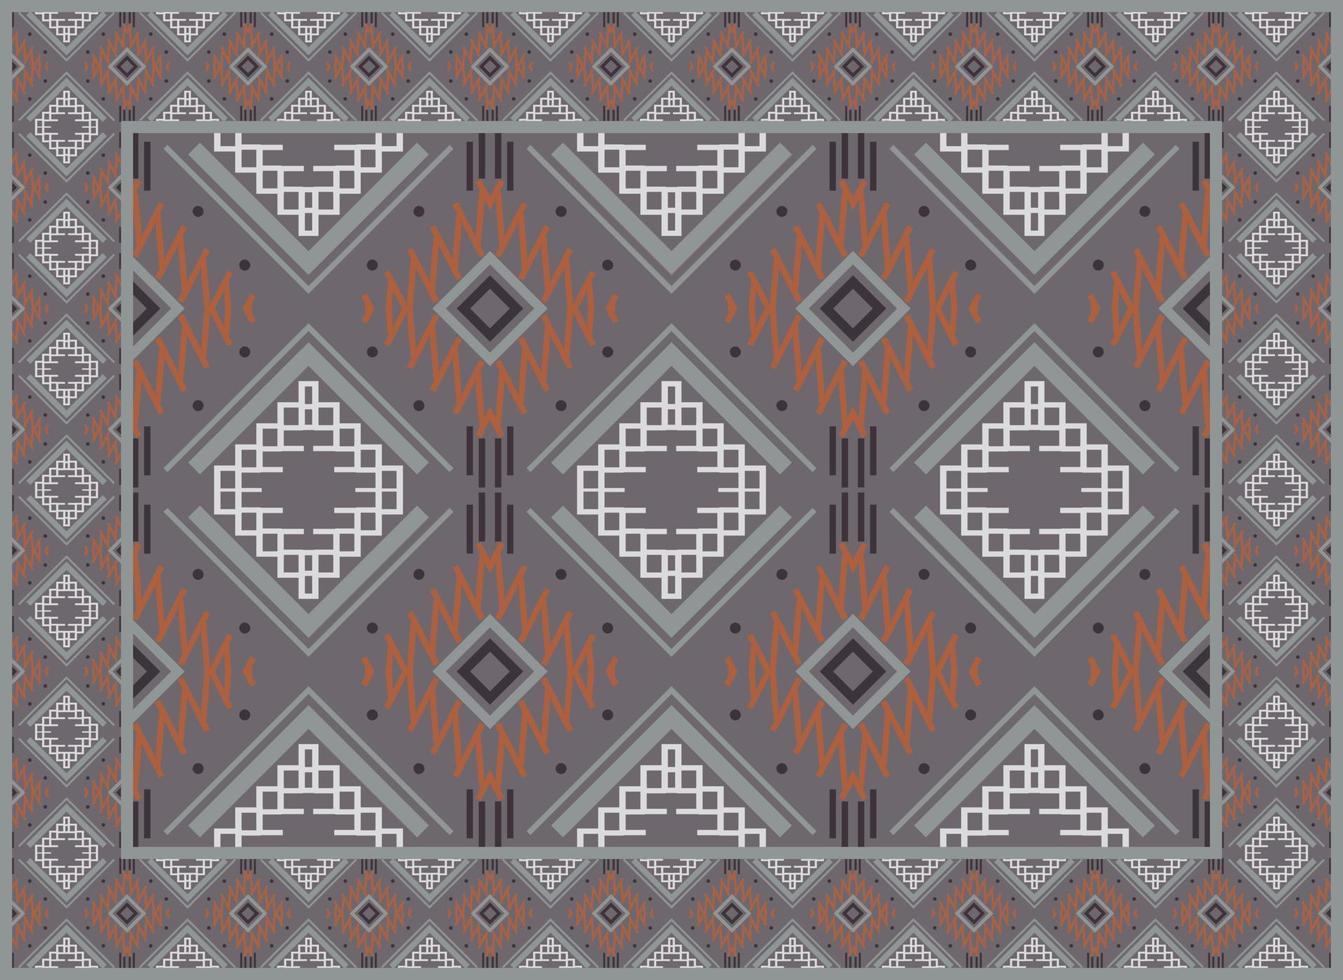 persisch Teppich Muster, skandinavisch persisch Teppich modern afrikanisch ethnisch aztekisch Stil Design zum drucken Stoff Teppiche, Handtücher, Taschentücher, Schals Teppich, vektor